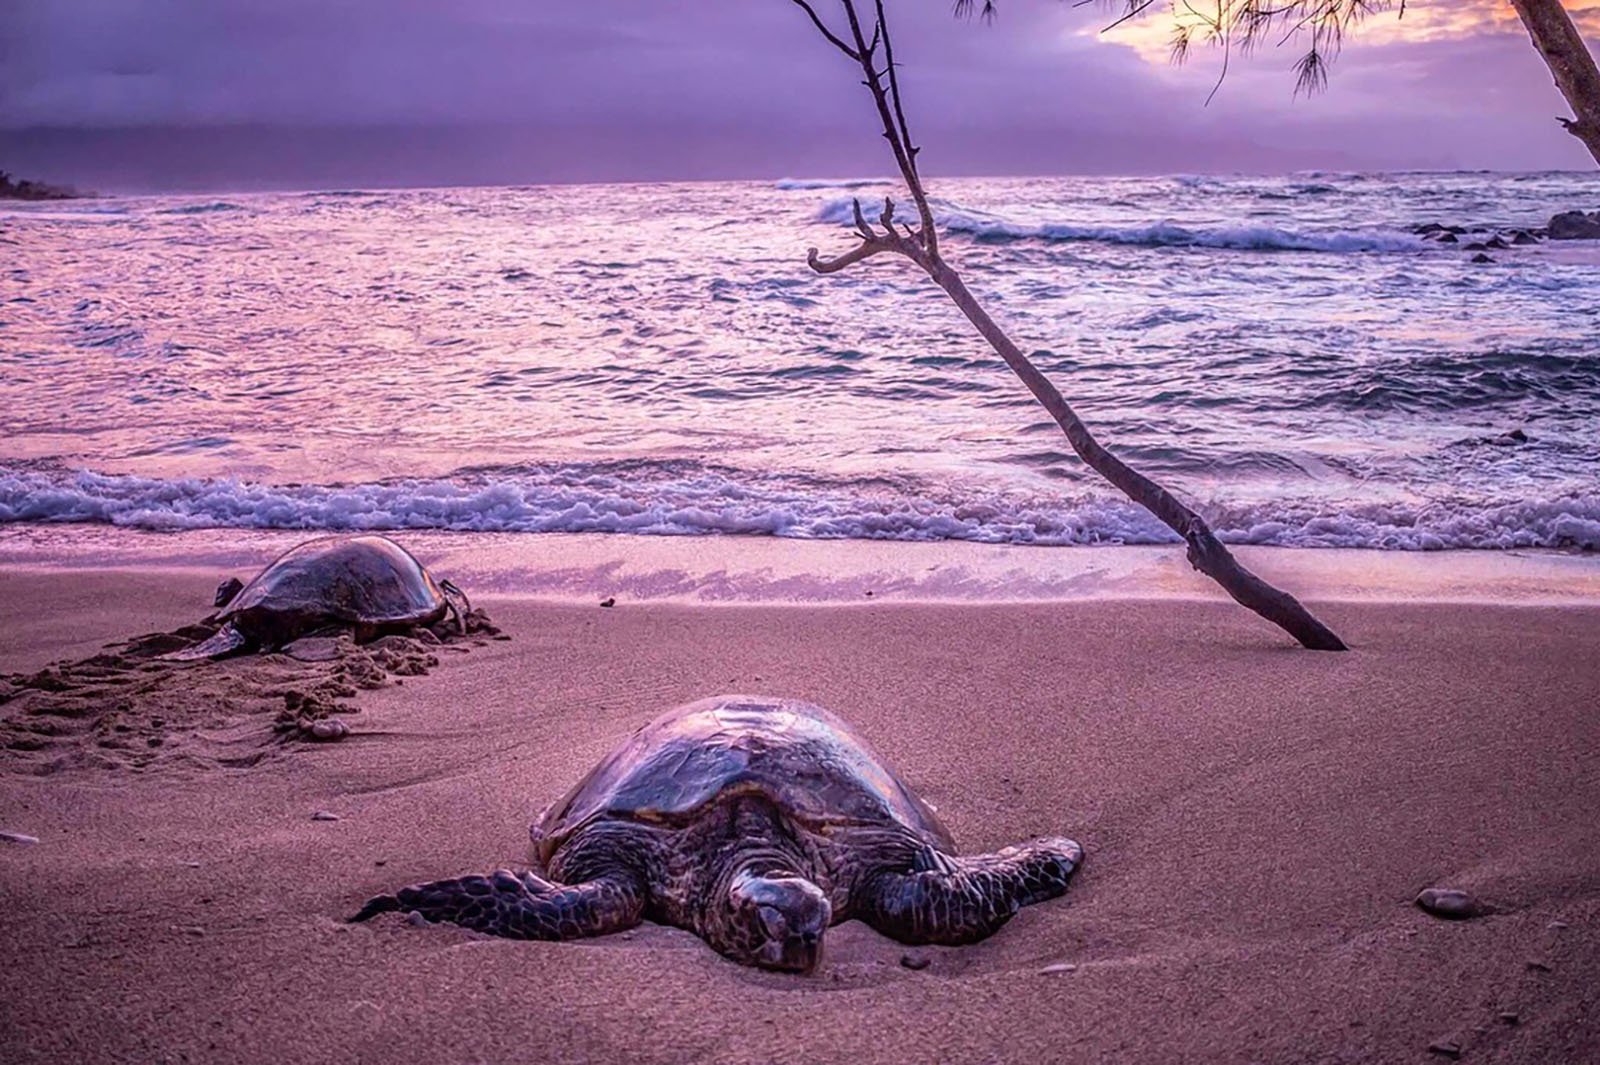 Sea turtles on the beach.